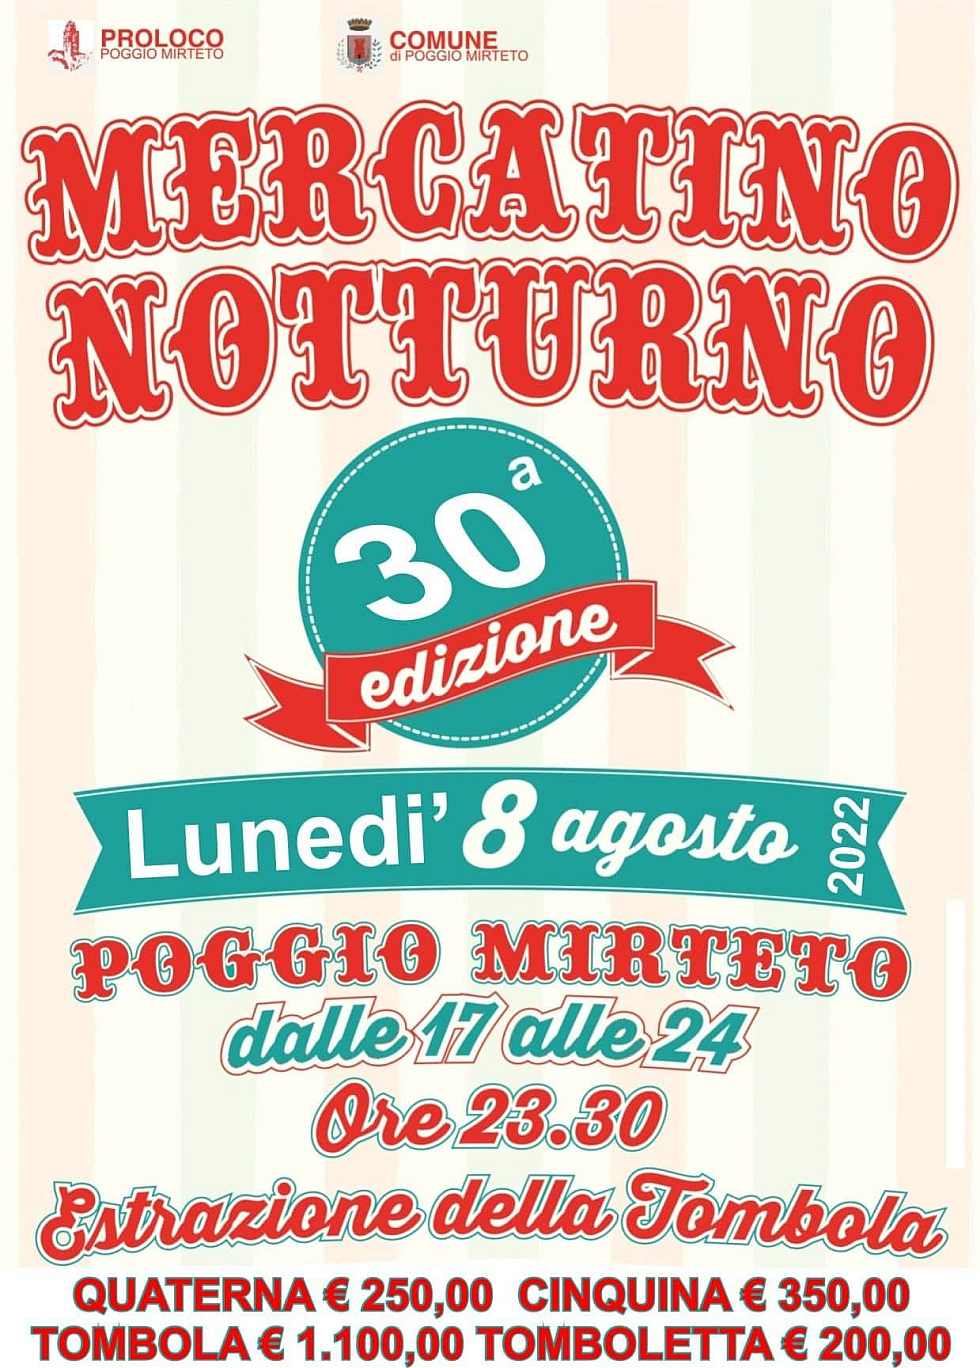 Poggio Mirteto (RI)
"30° Mercatino Notturno"
8 Agosto 2022